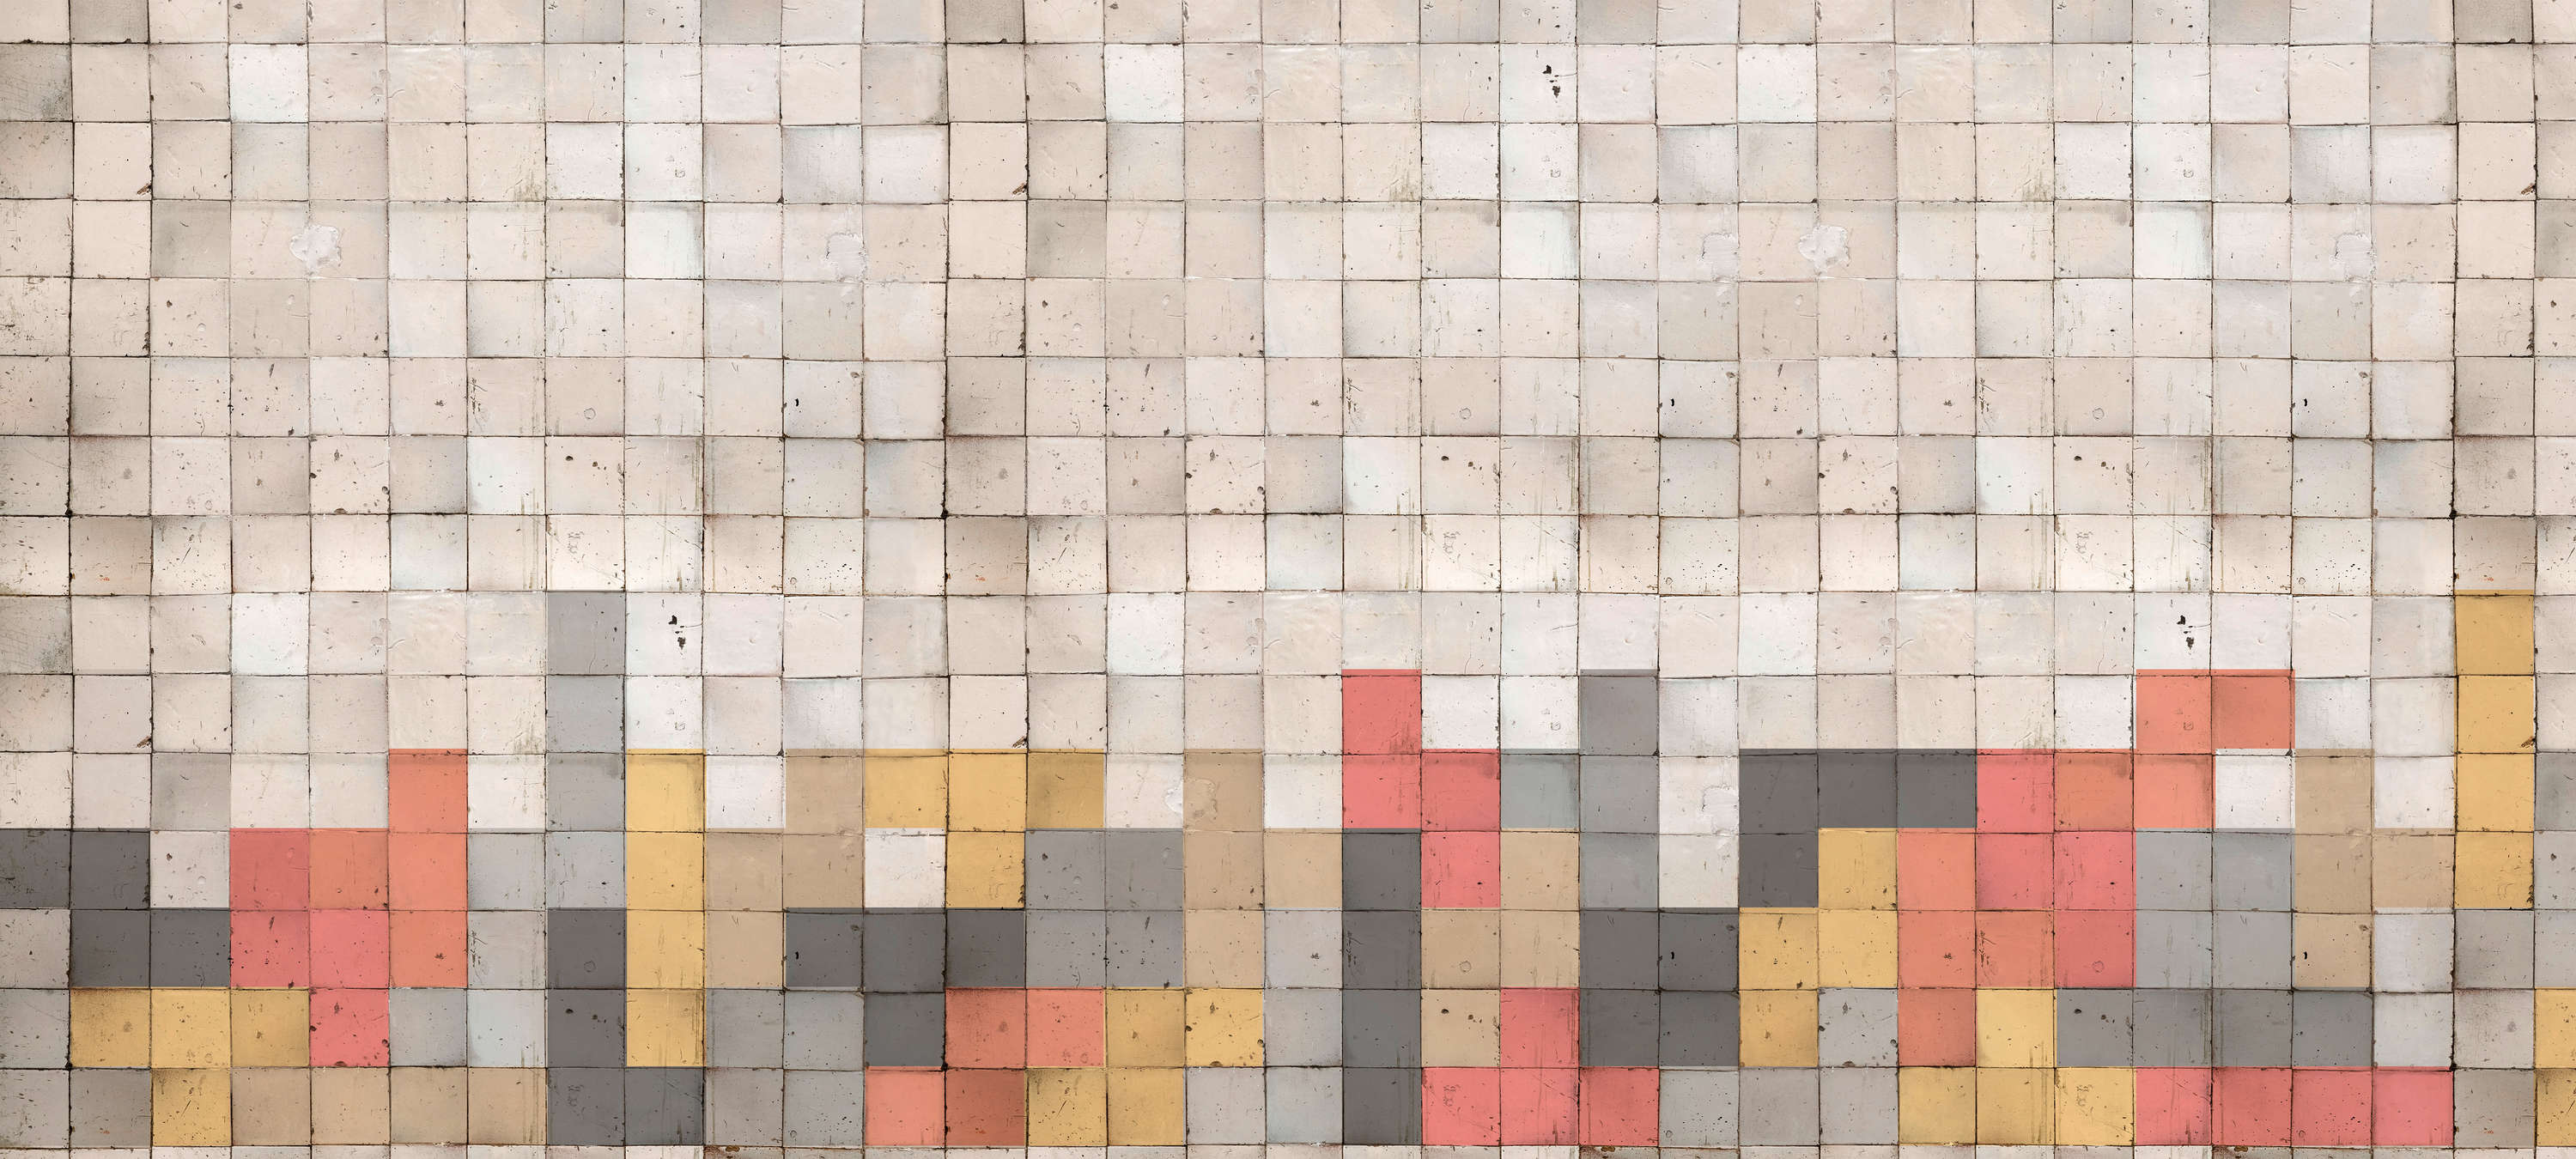             Mozaïek Behang met Betonblokpatroon - Grijs, Oranje, Geel
        